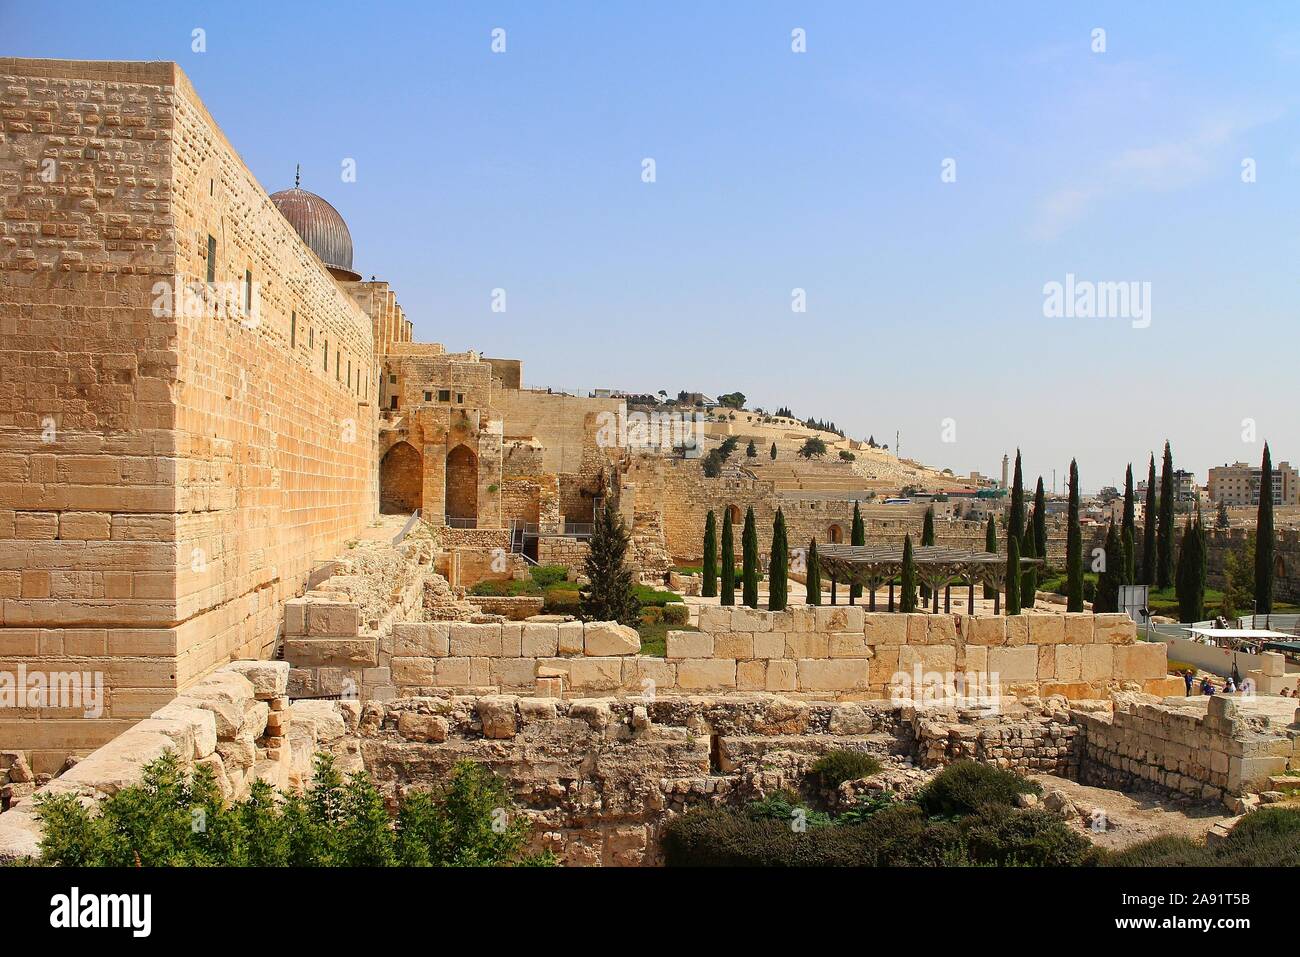 Mont du Temple, vieux murs de Jérusalem avec le dôme de la mosquée Al-Aqsa, et vue vers le sud et l'Est de Jérusalem et le Mont des oliviers dans la distance. Banque D'Images